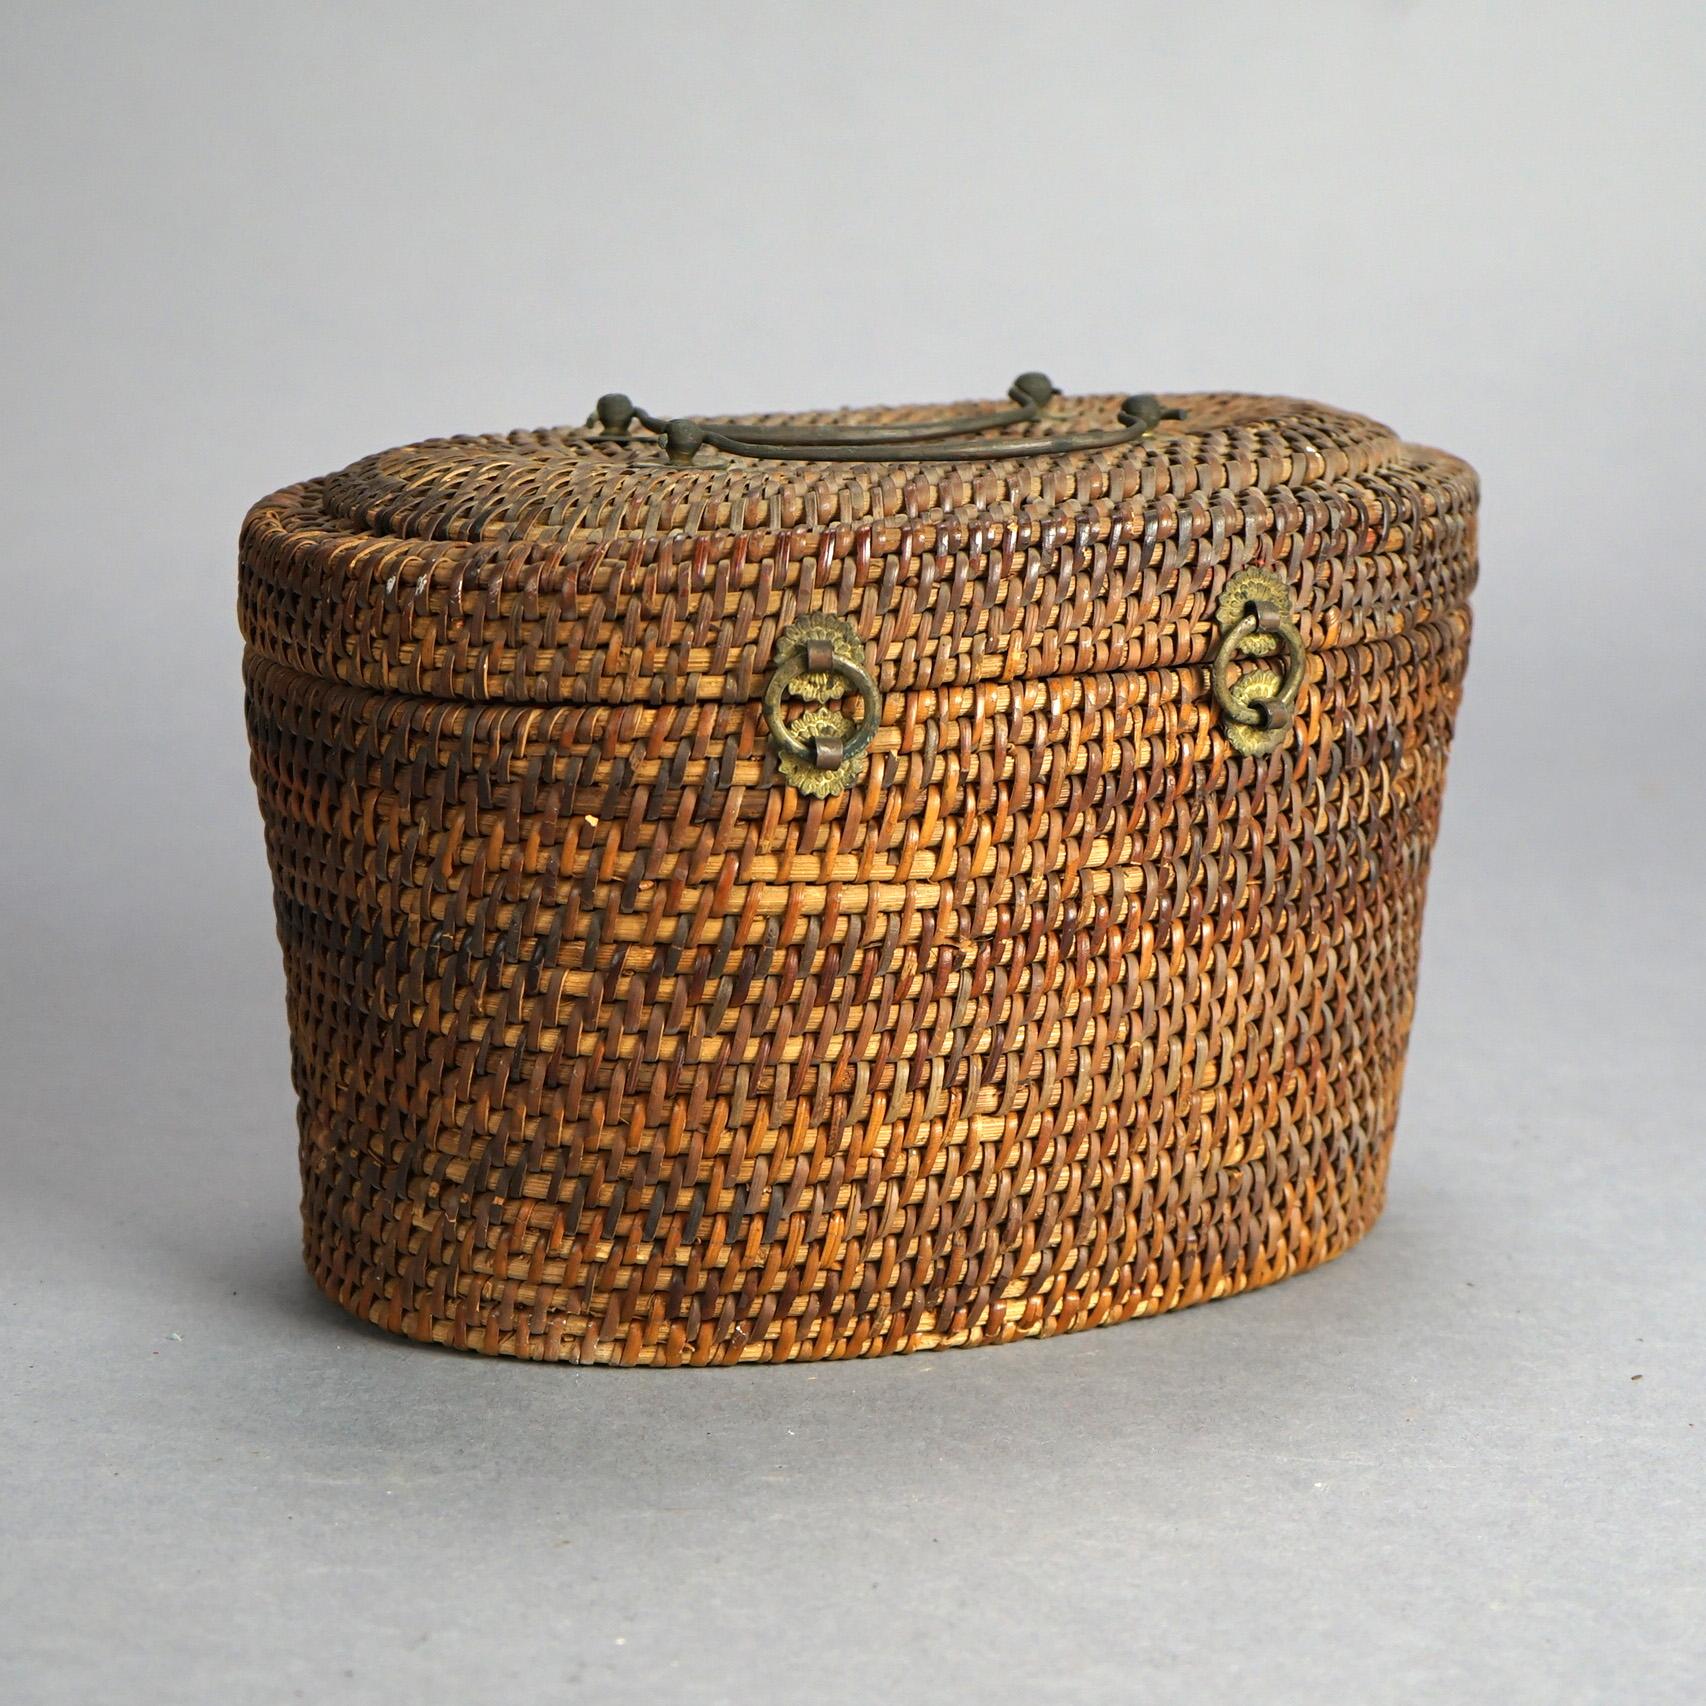 Antique Chinese Porcelain Rose Medallion Teapot Set In Basket Weave Case C1900 5